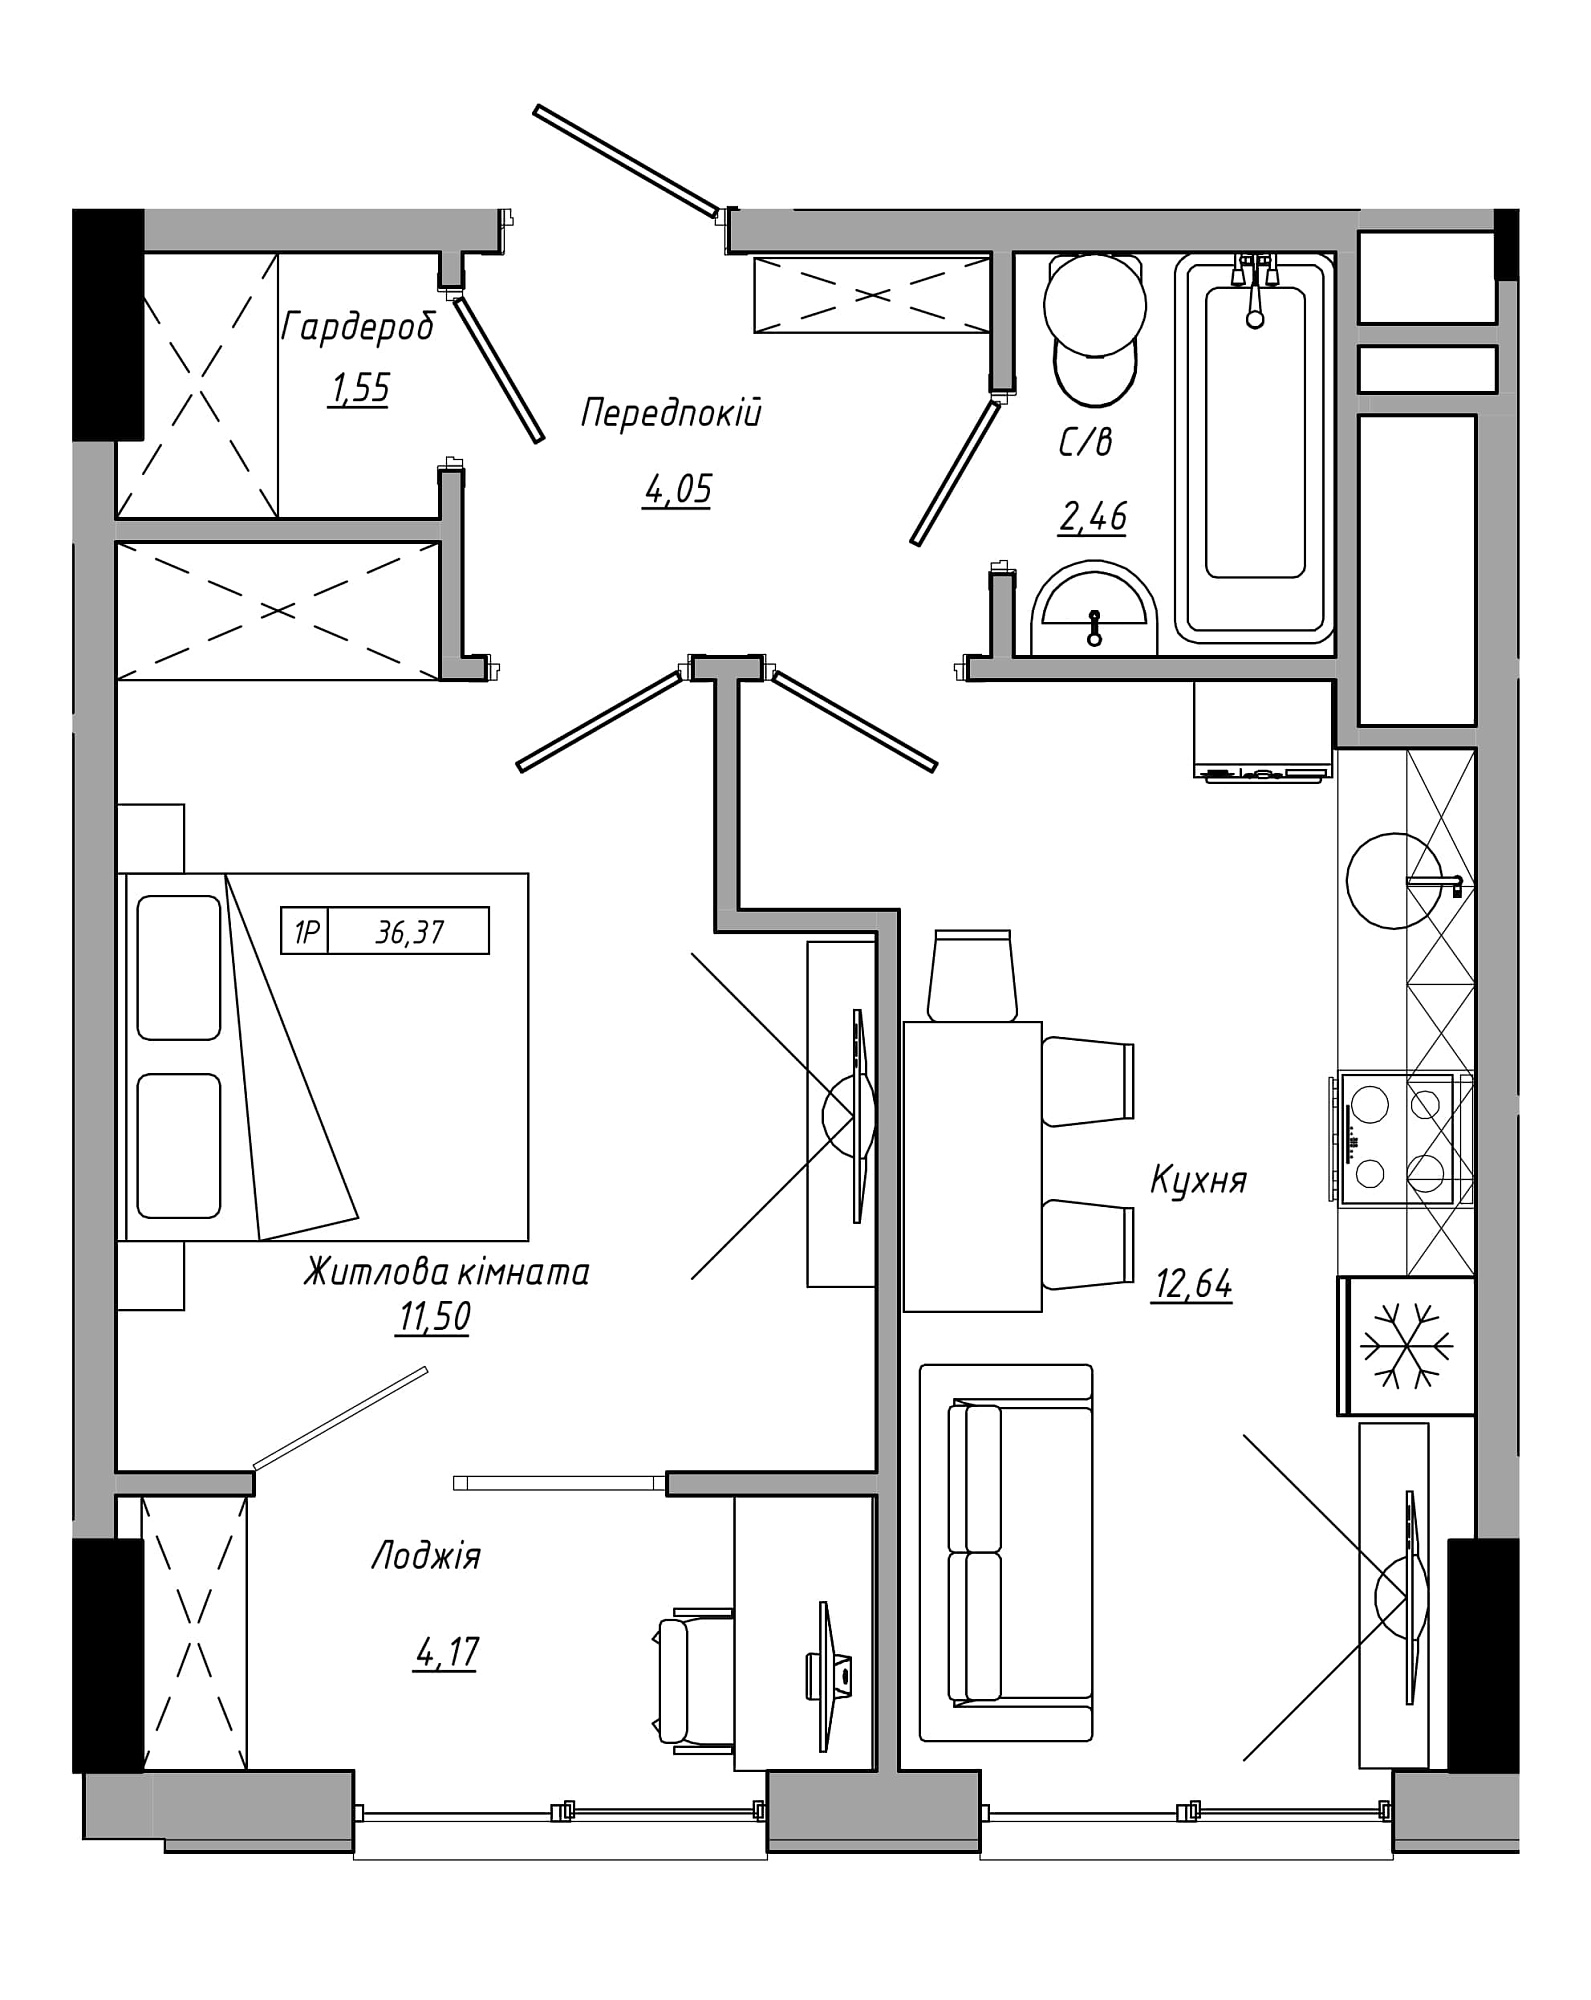 Планировка 1-к квартира площей 36.37м2, AB-21-10/00020.